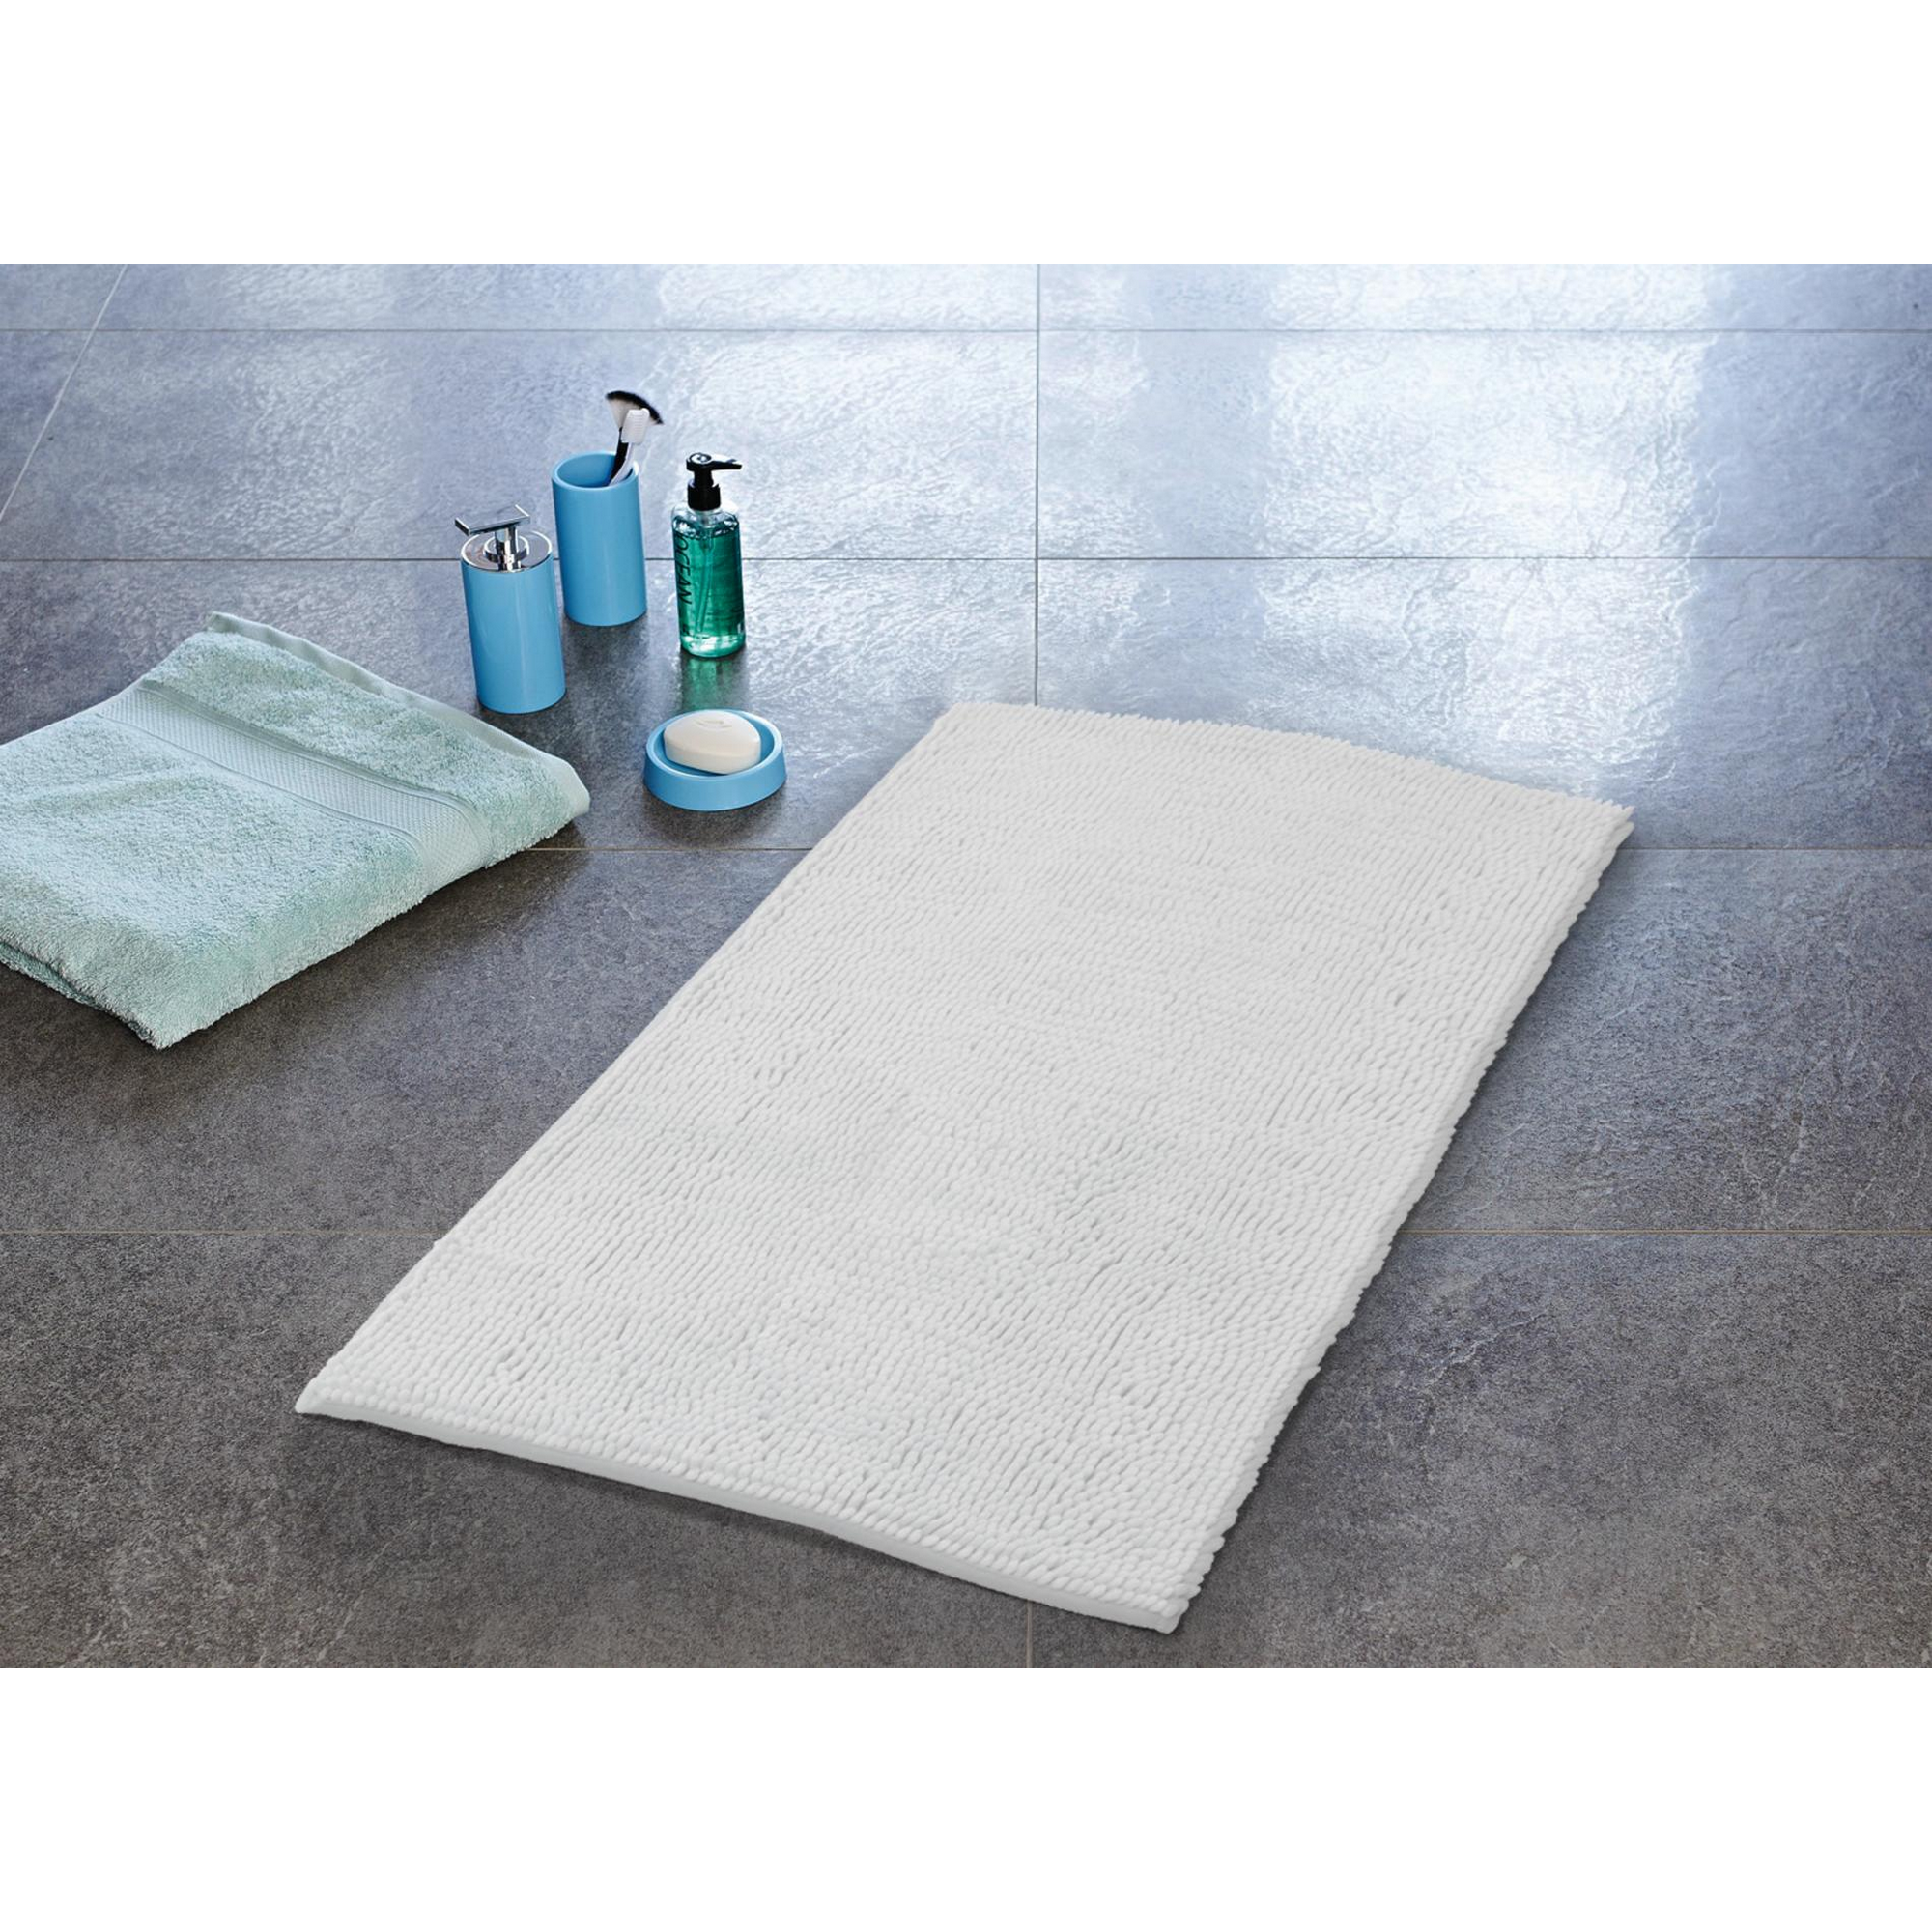 Badezimmerteppich 'Soft' weiß 65 x 45 cm + product picture